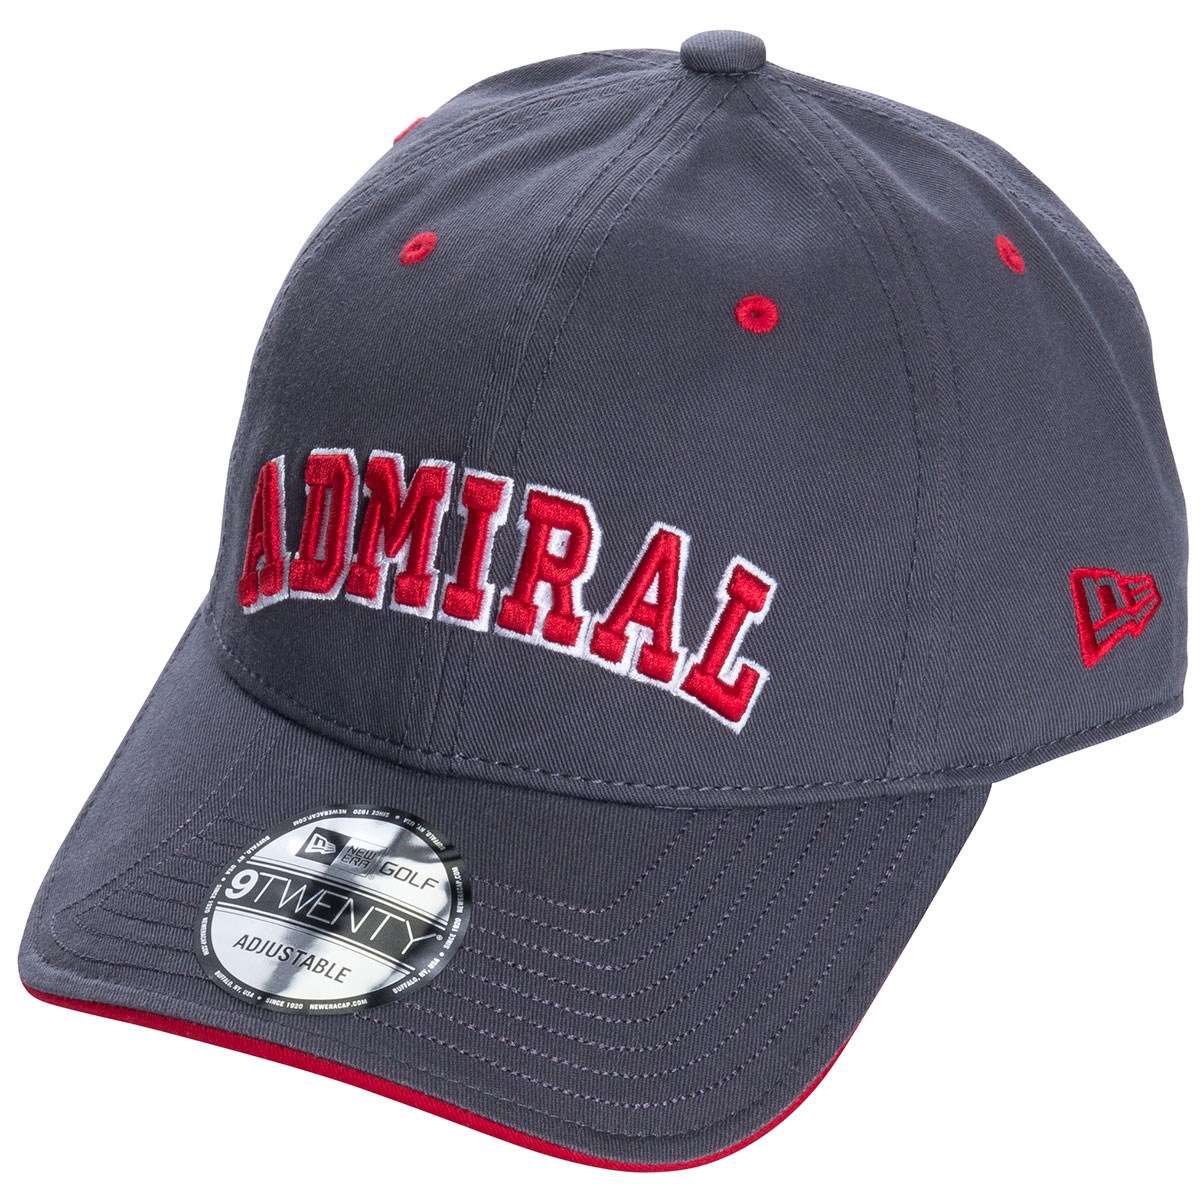  [2018年モデル] アドミラル NEW ERAコラボ キャップ ゴルフウェア 帽子